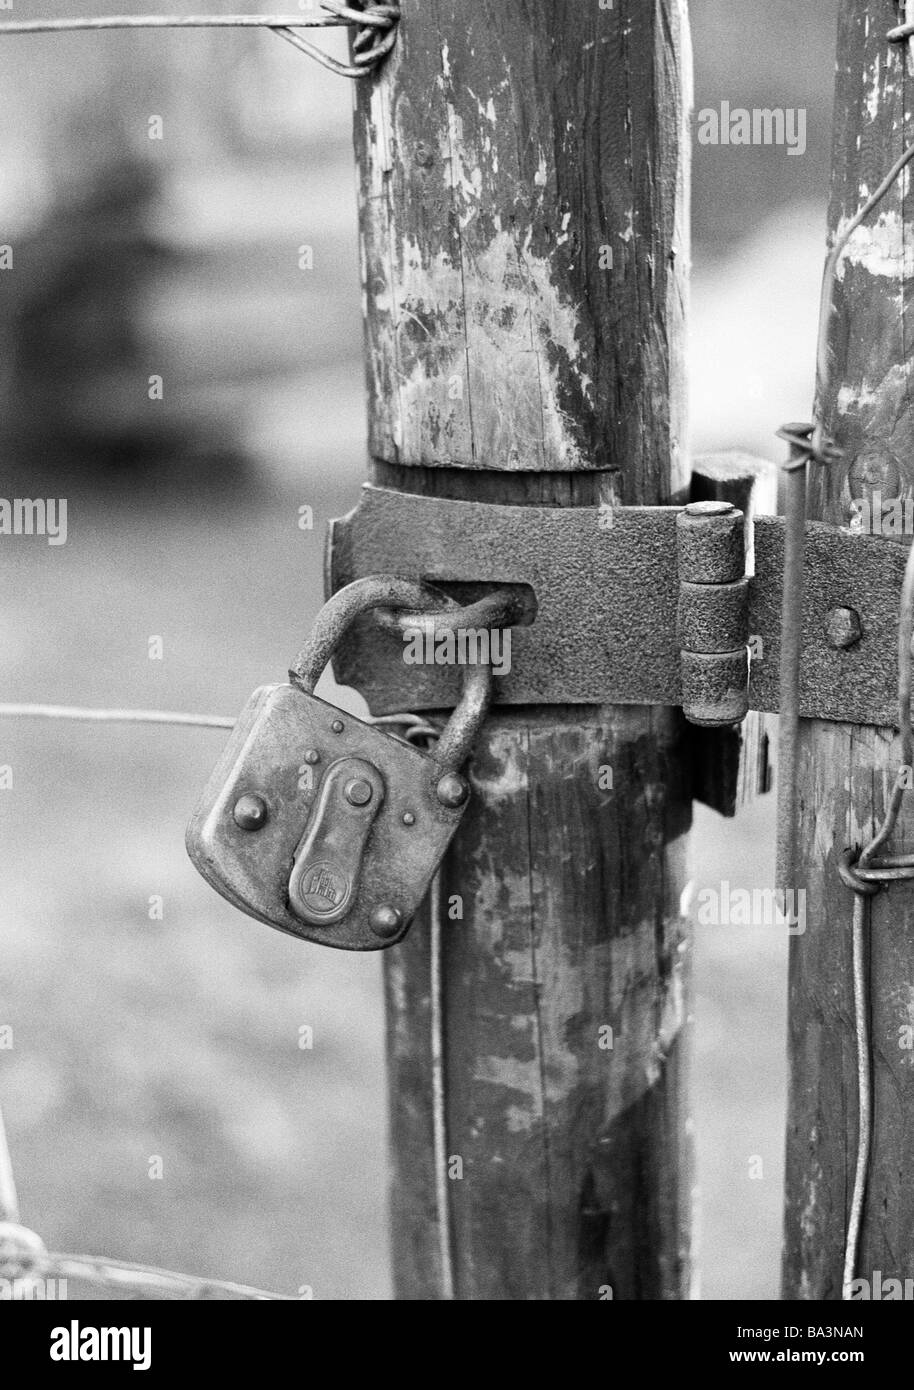 Années 70, photo en noir et blanc, symbolique, cadenas en une clôture en bois, des raccords en métal Banque D'Images